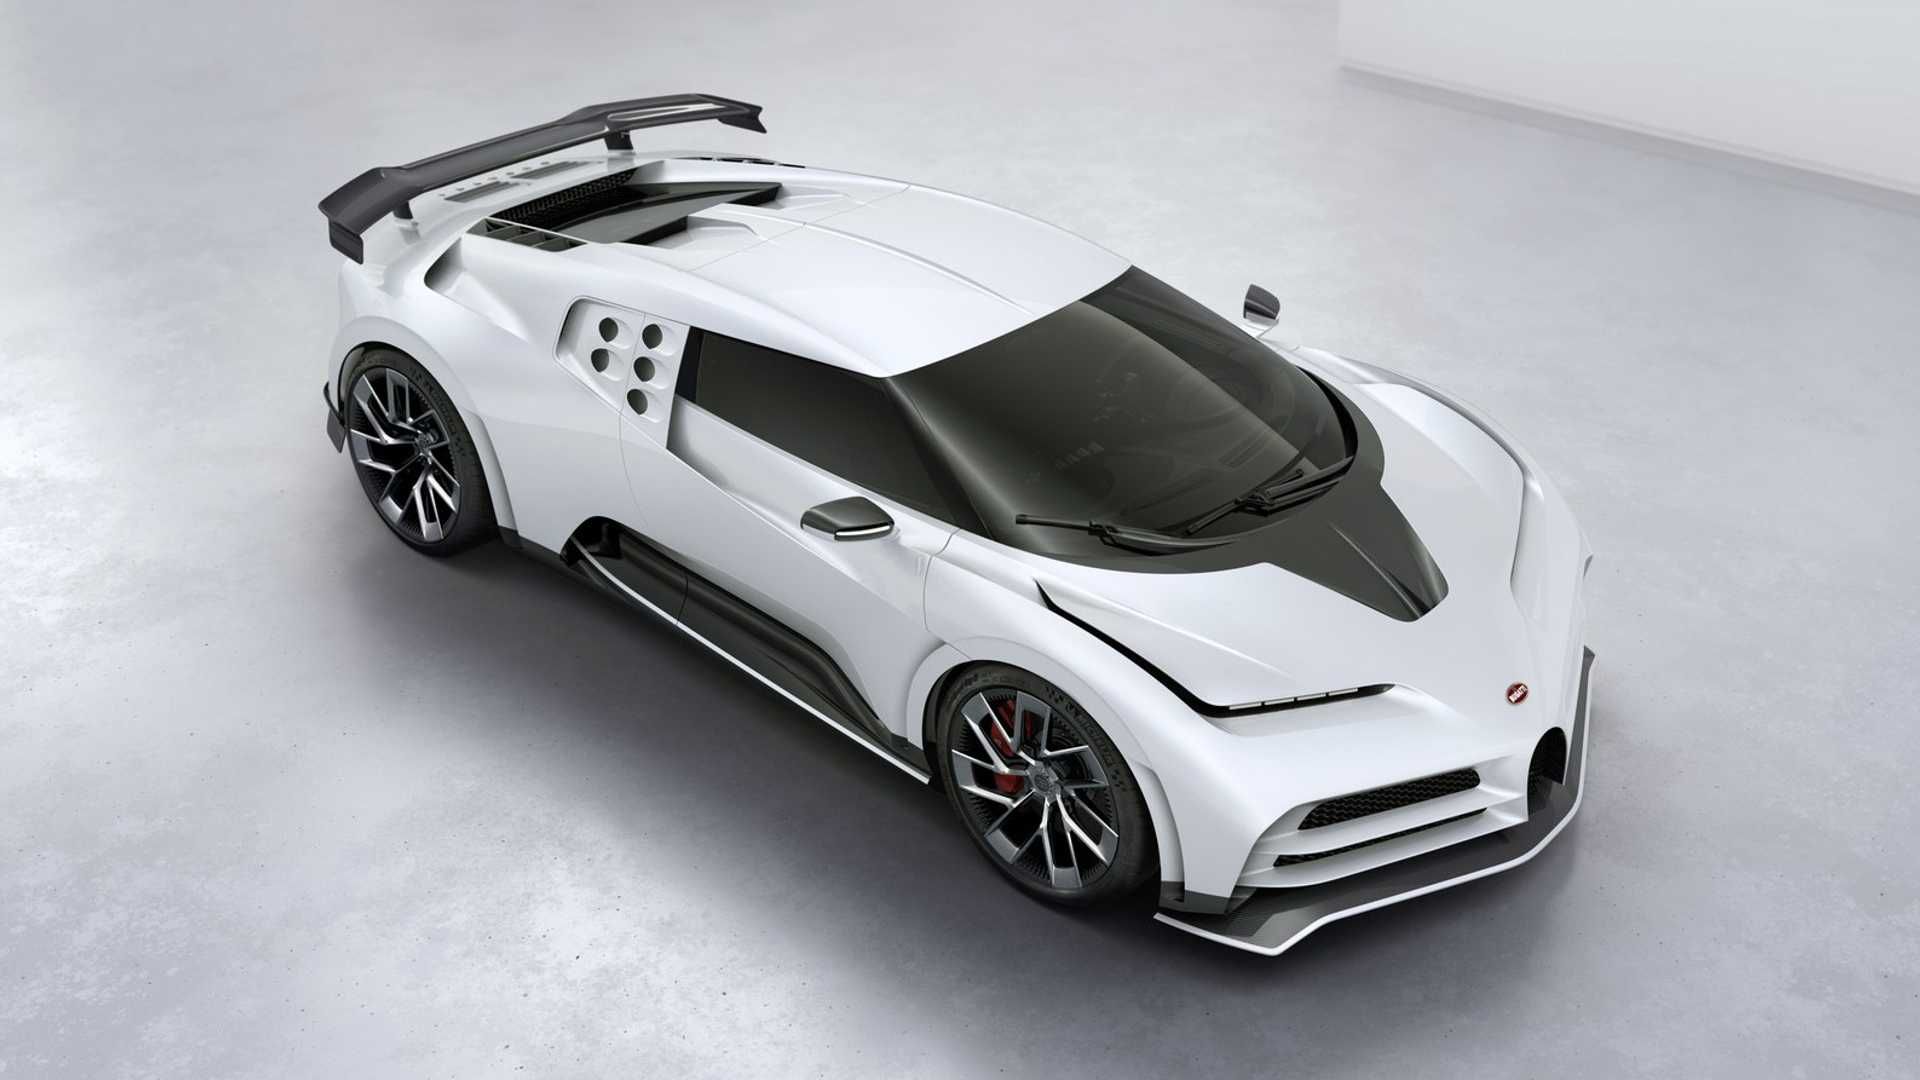 مرجع متخصصين ايران نماي جانبي بالا ابرخودرو بوگاتي سنتودايچي / Bugatti Centodieci hypercar سفيد رنگ